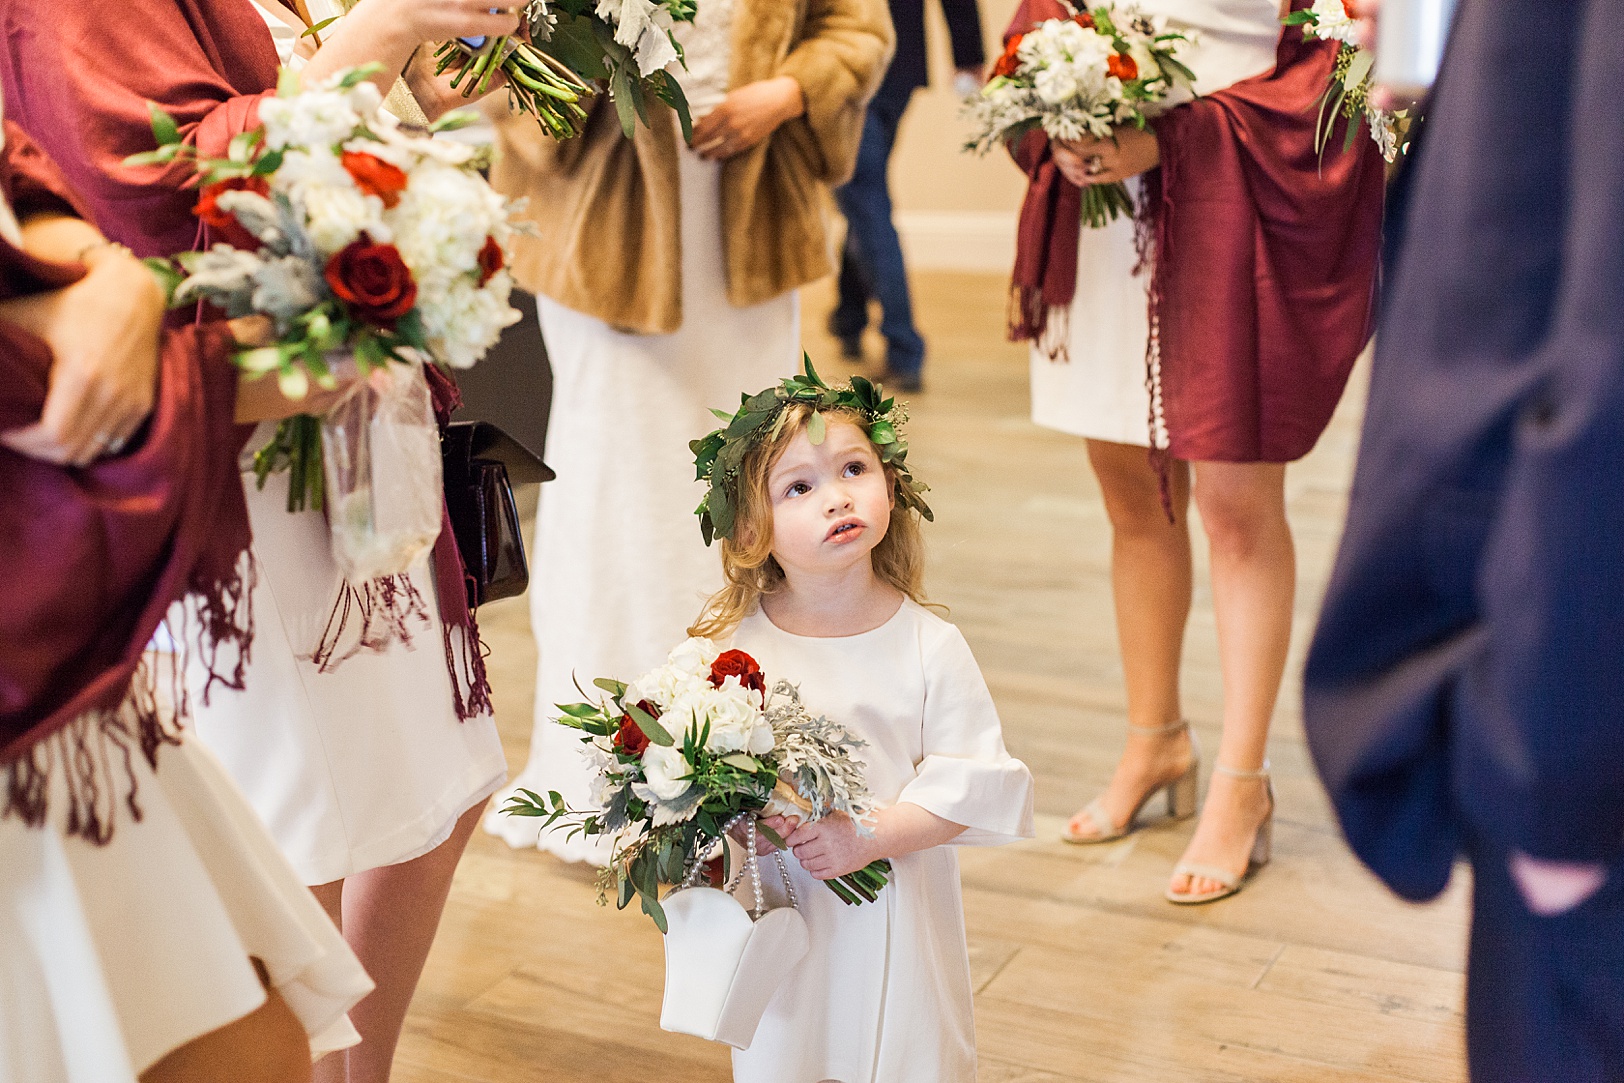 Flower Girl for Christmas-themed wedding | Kaitlin Scott Photography